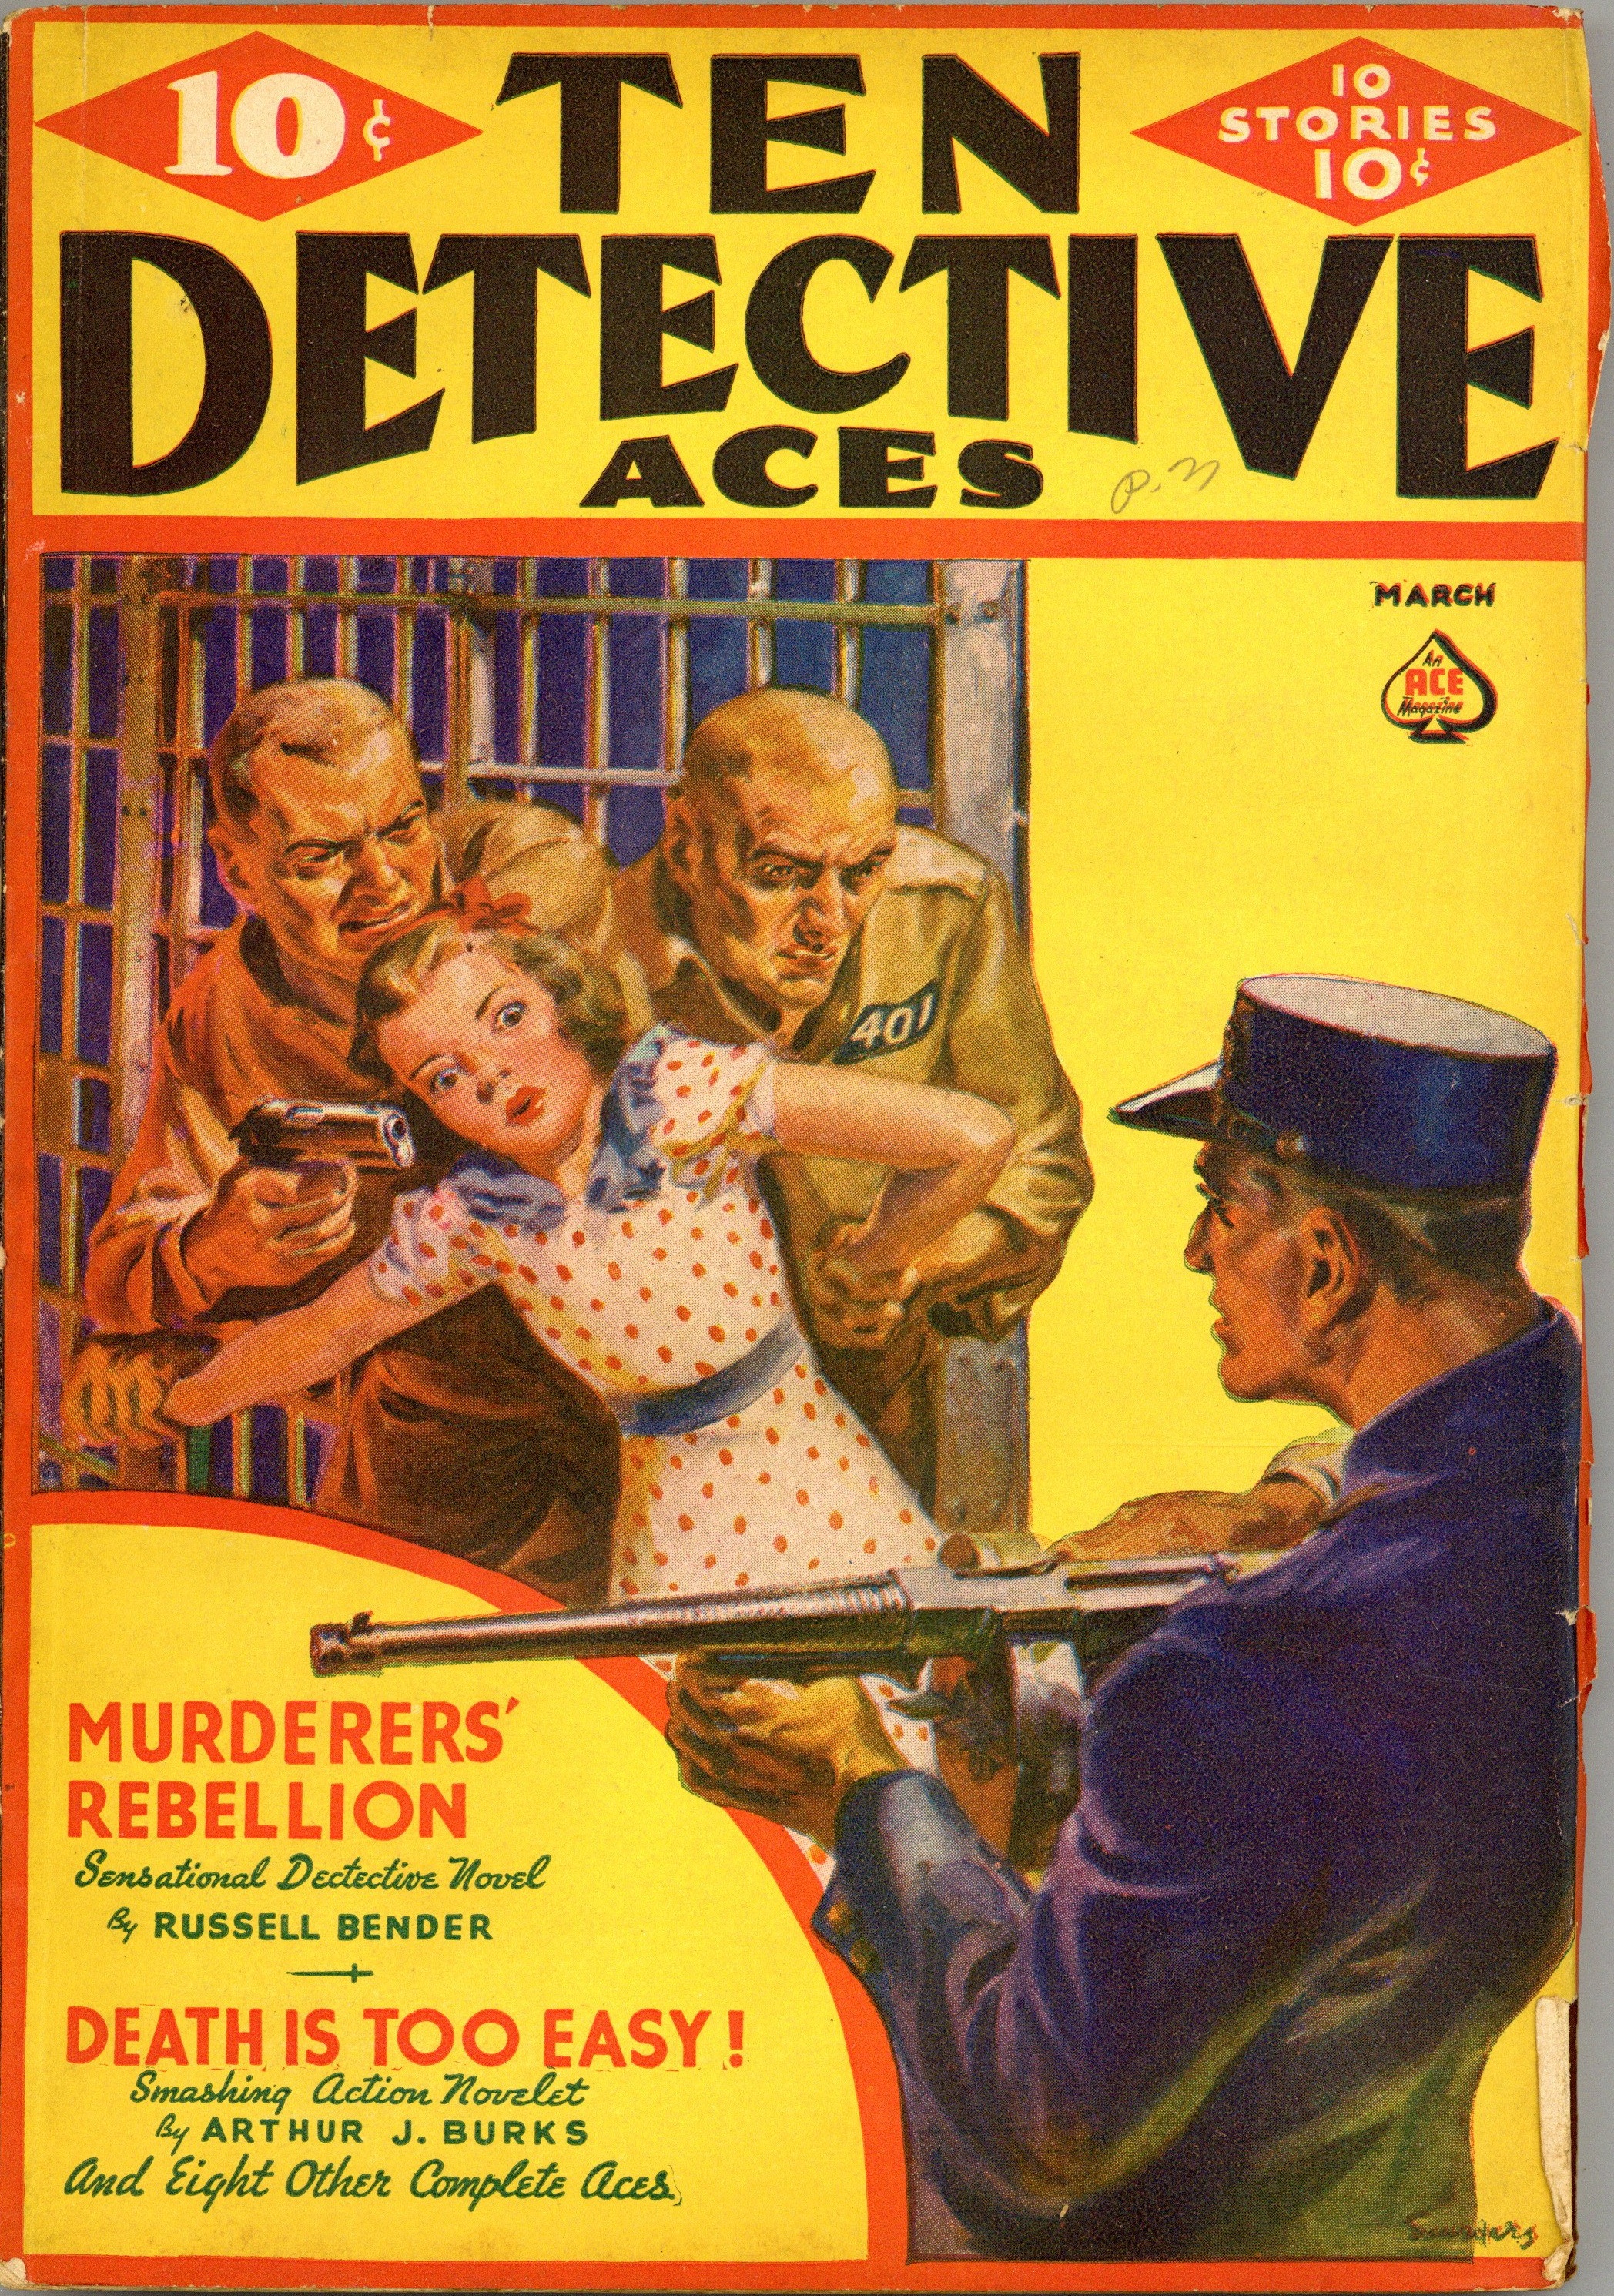 Ten Detective Aces March 1938